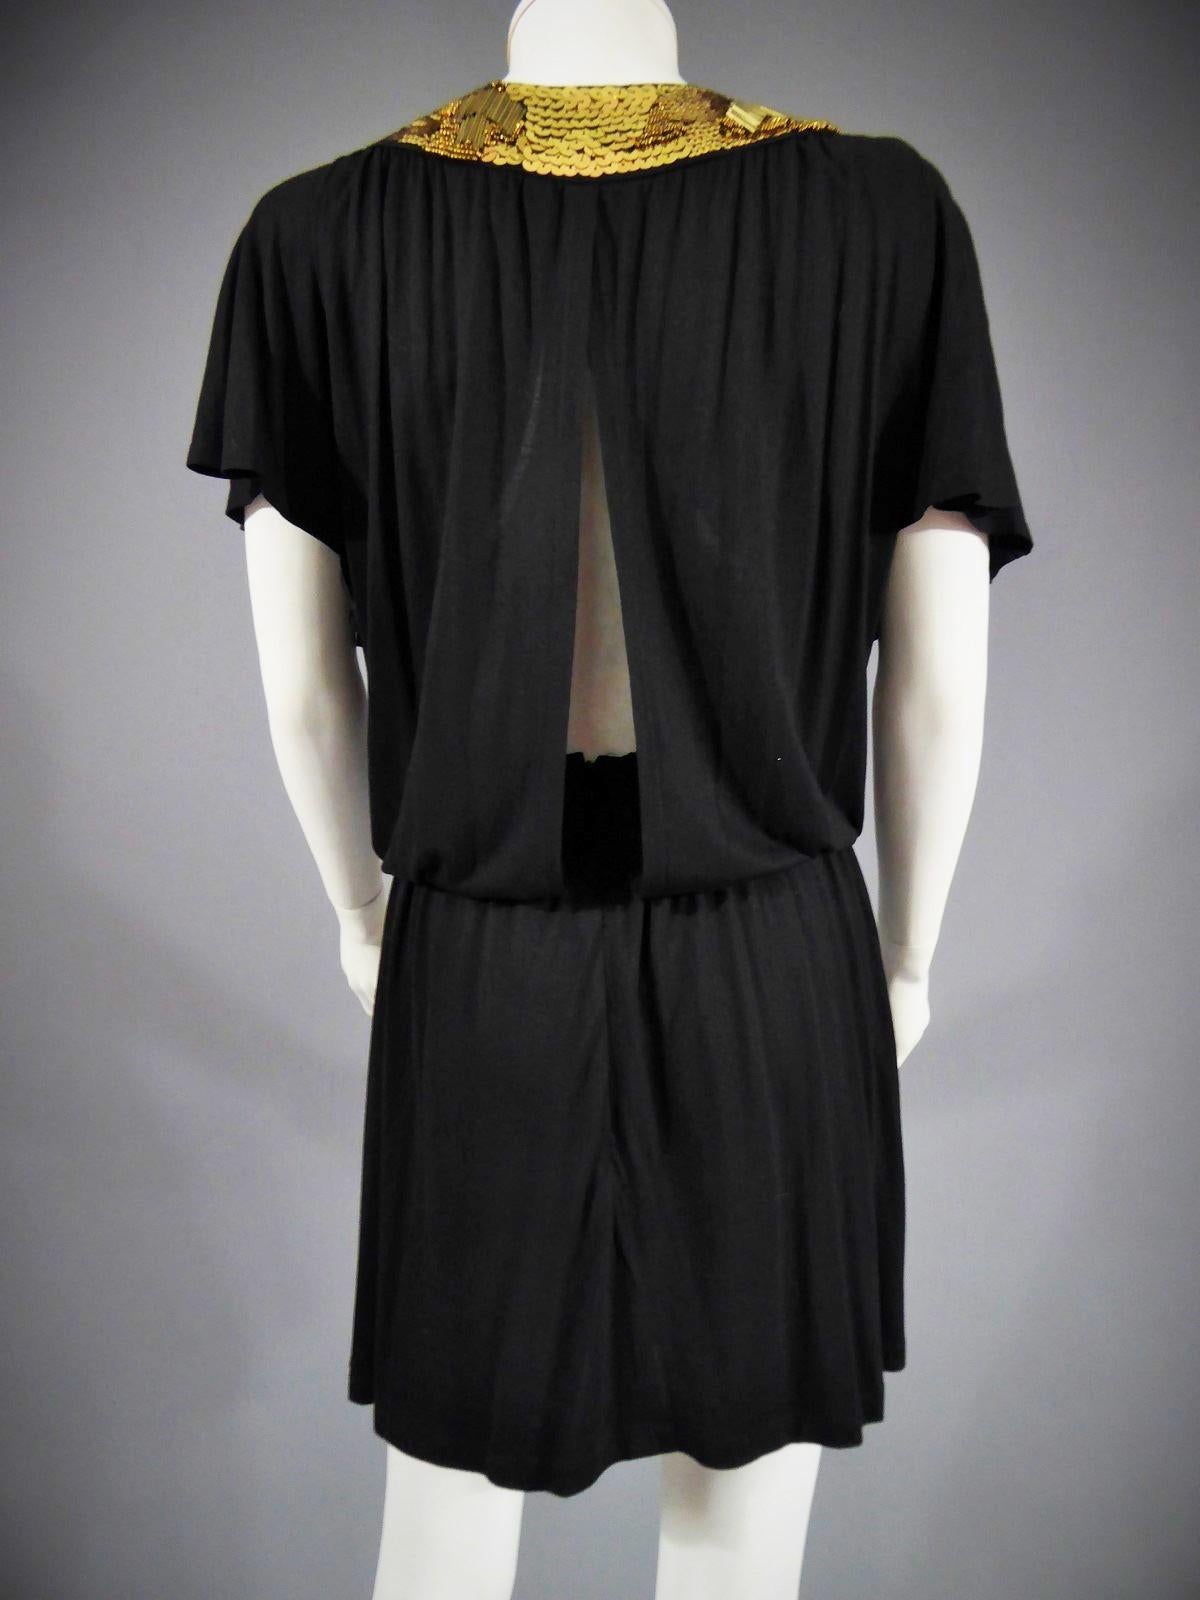 A Biba black embroidered mini Dress, Circa 1970-1980 For Sale 4